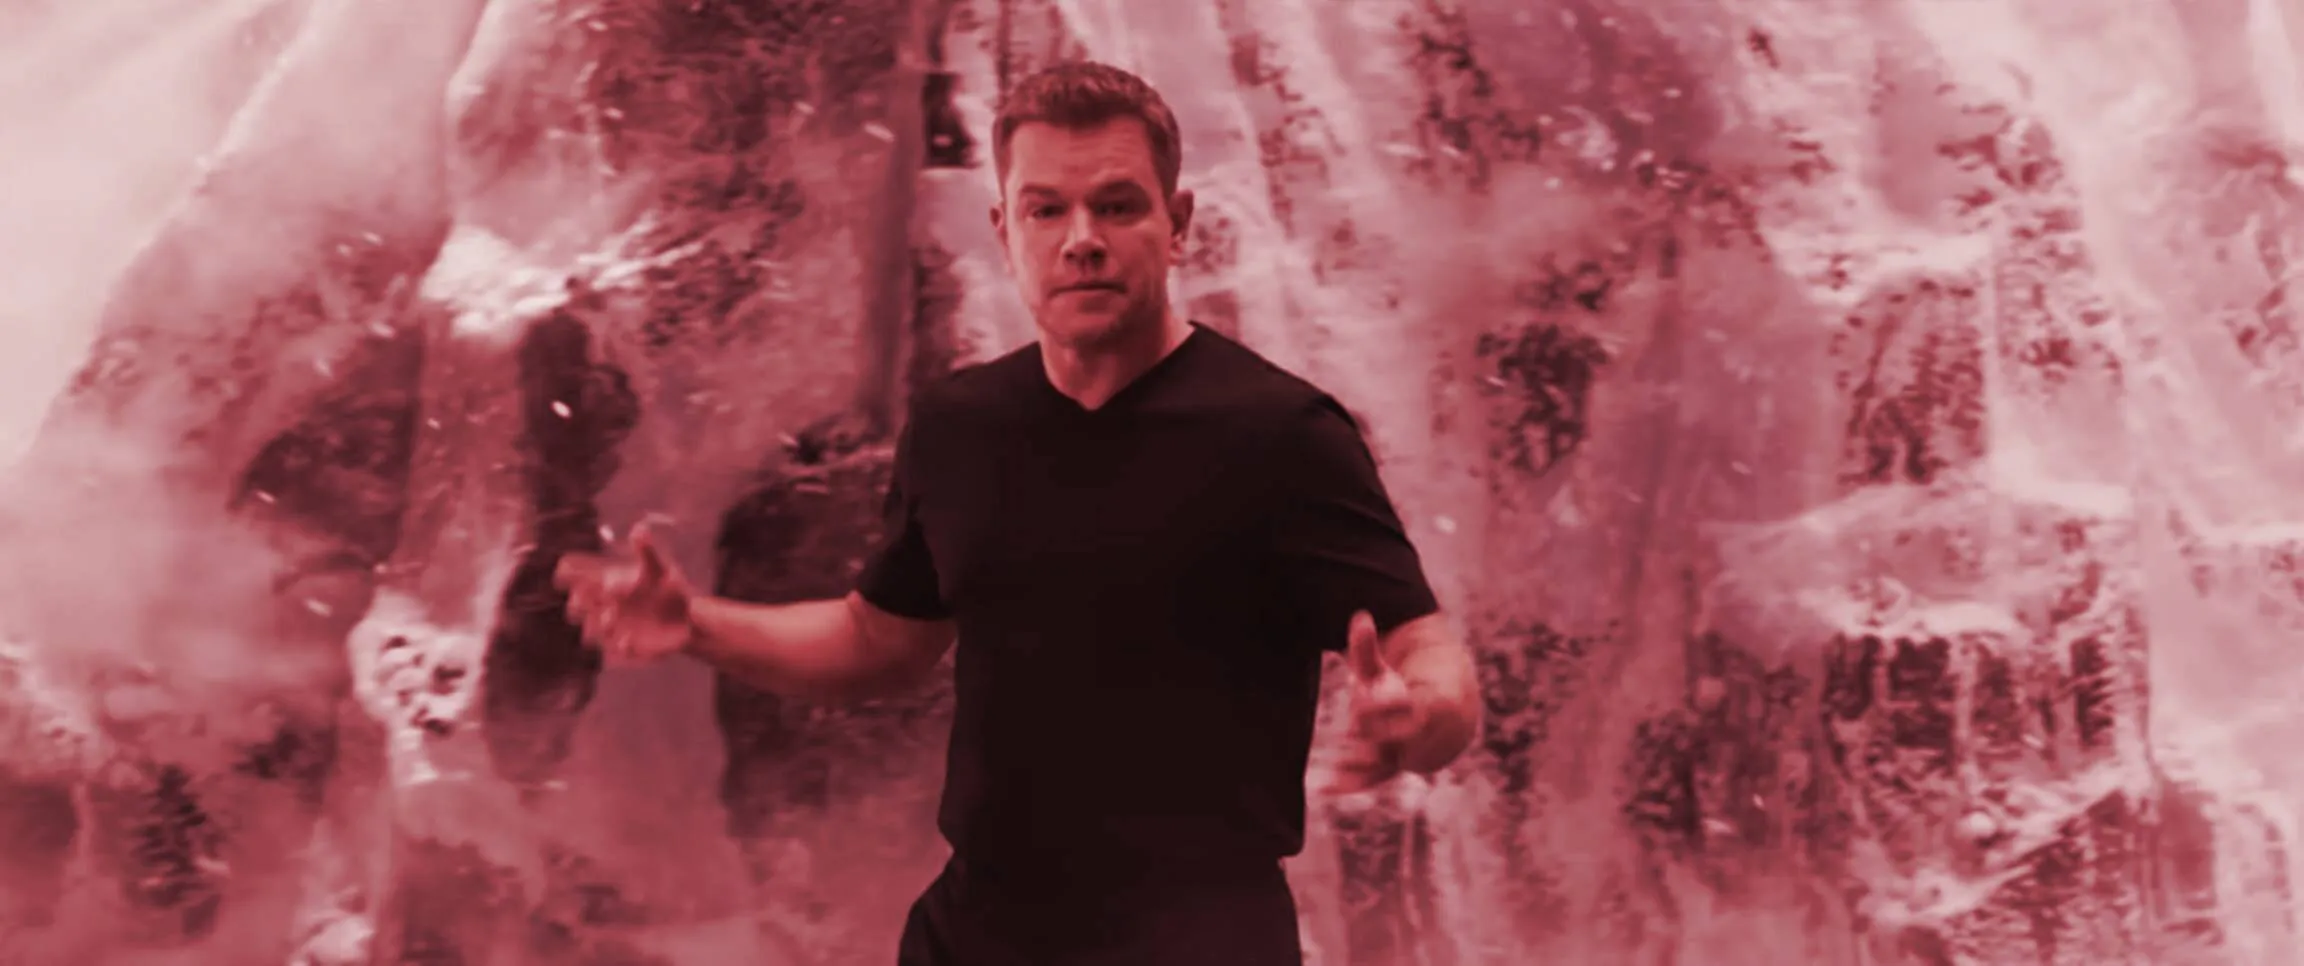 Matt Damon en el anuncio de Crypto.com "La fortuna favorece a los valientes